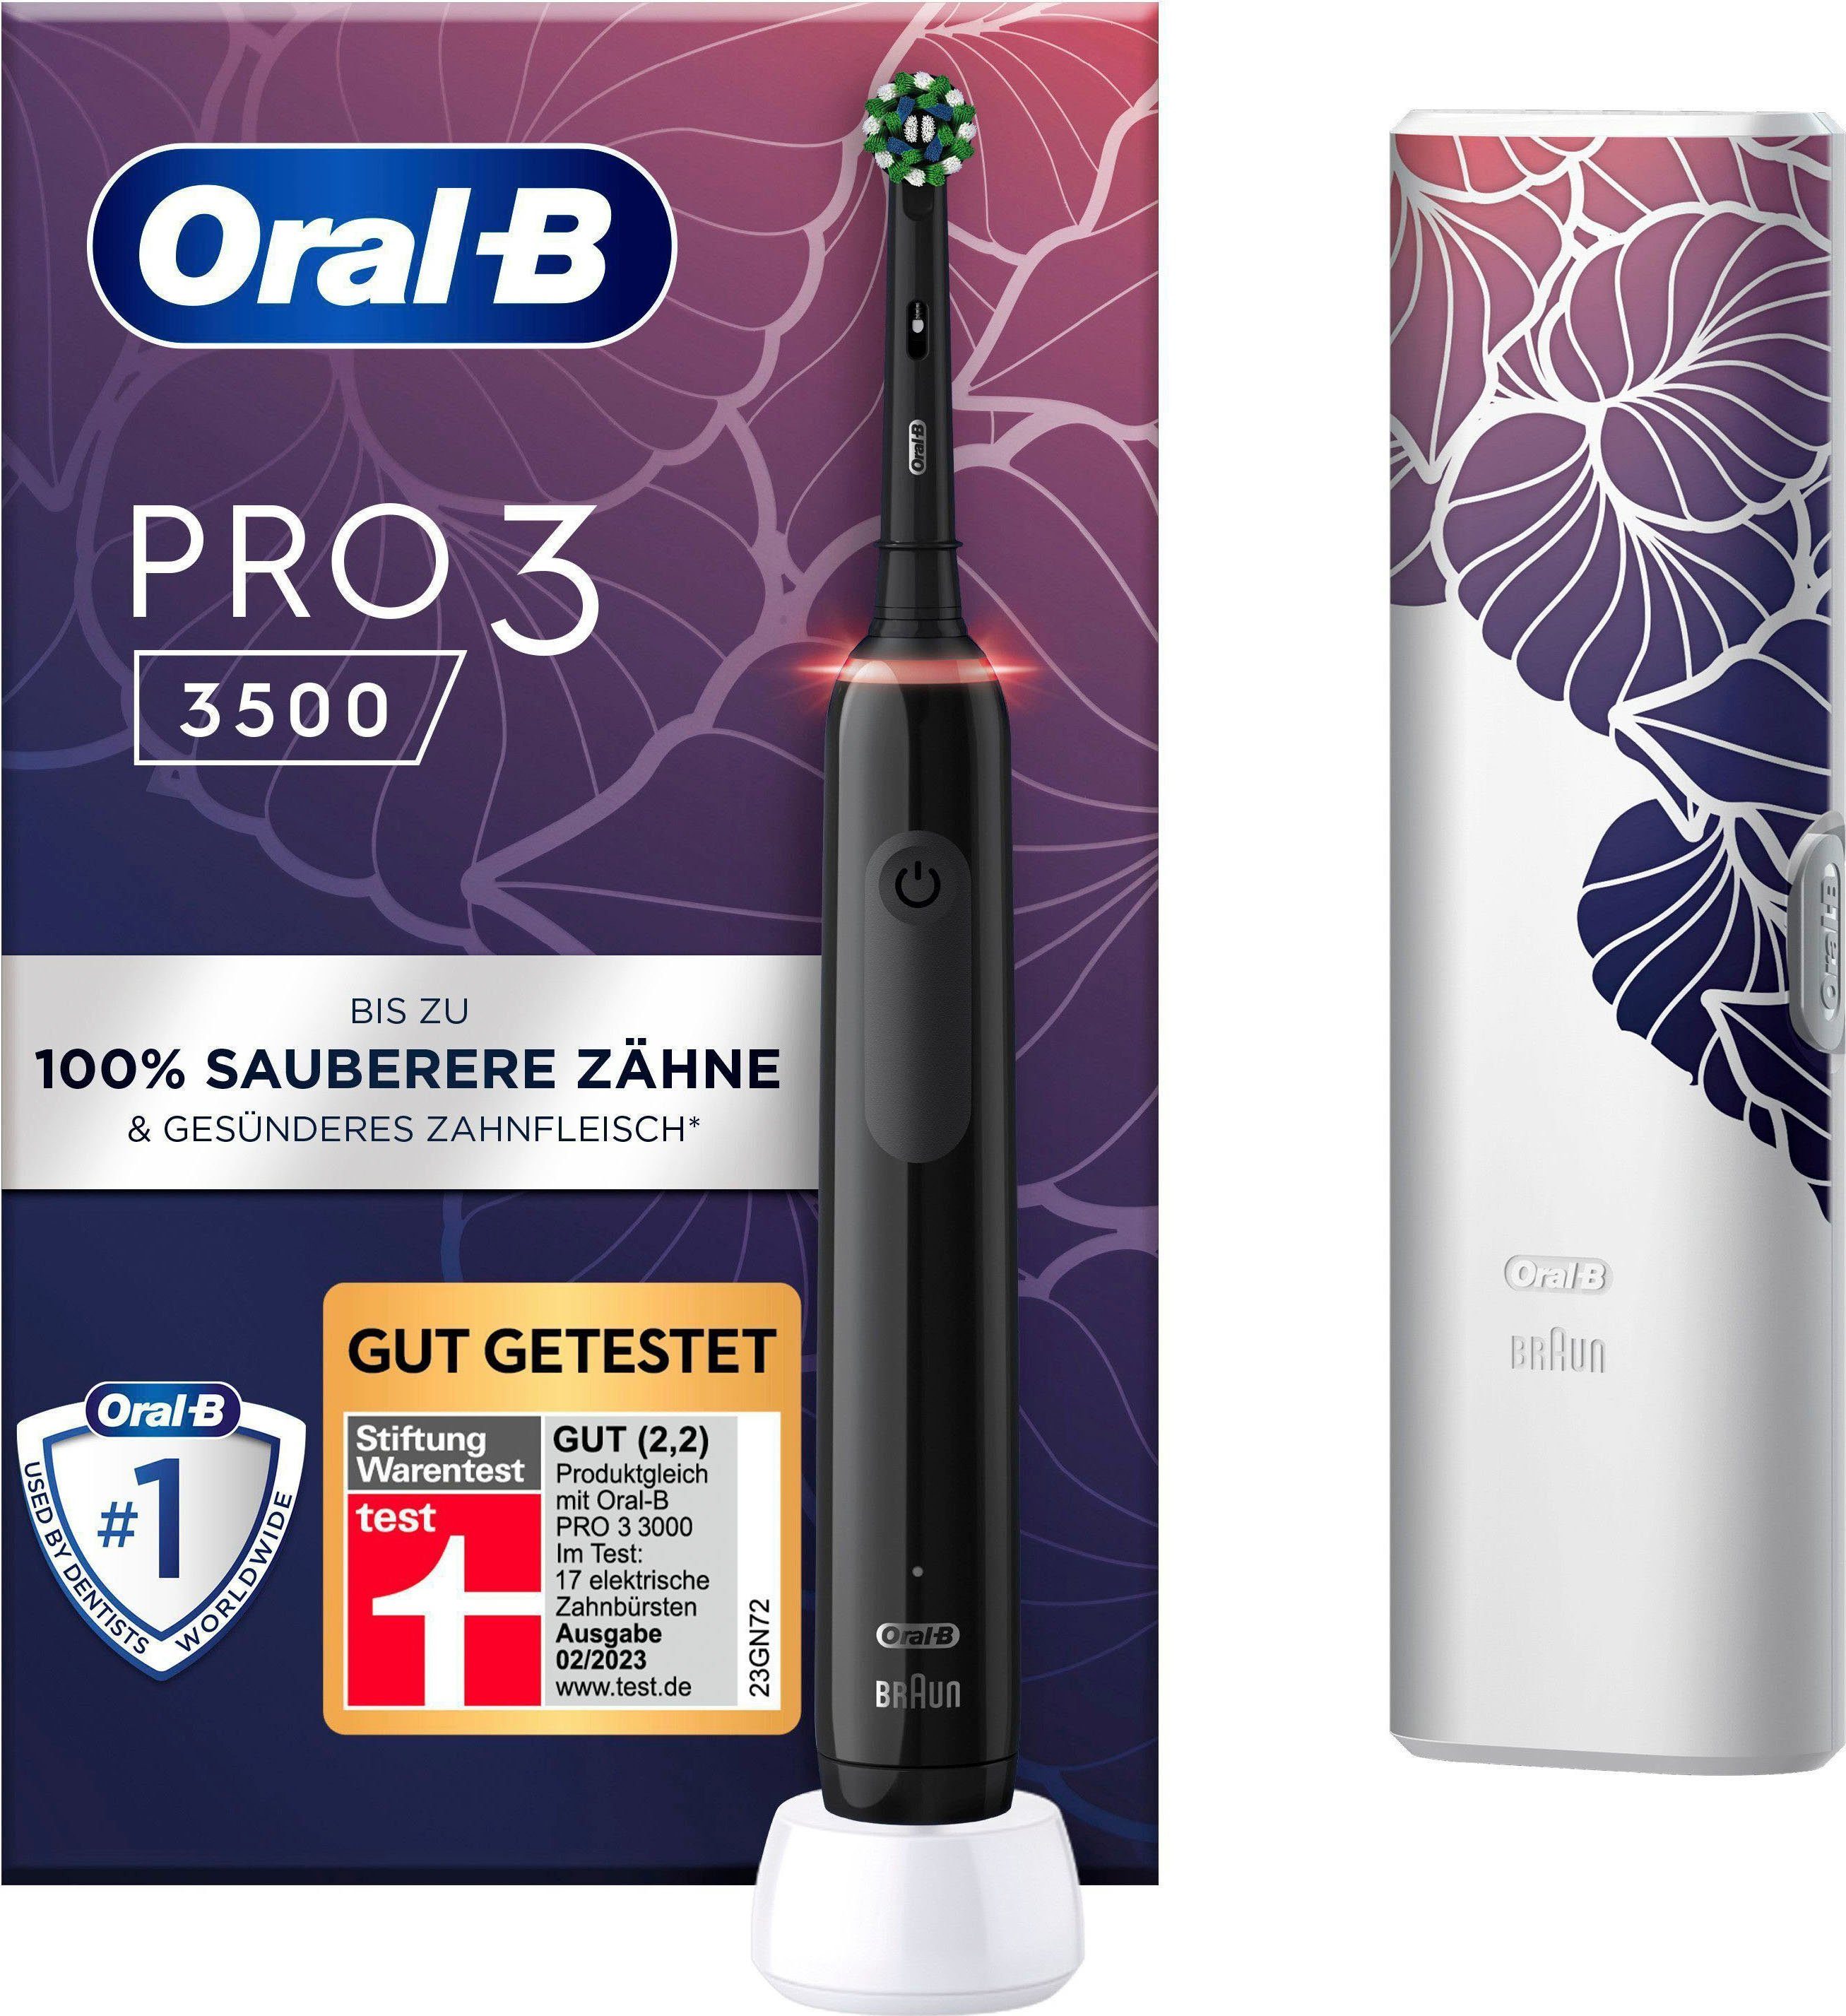 Oral-B Elektrische Zahnbürste PRO 3 St., Putzmodi schwarz 1 3500, 3 Aufsteckbürsten